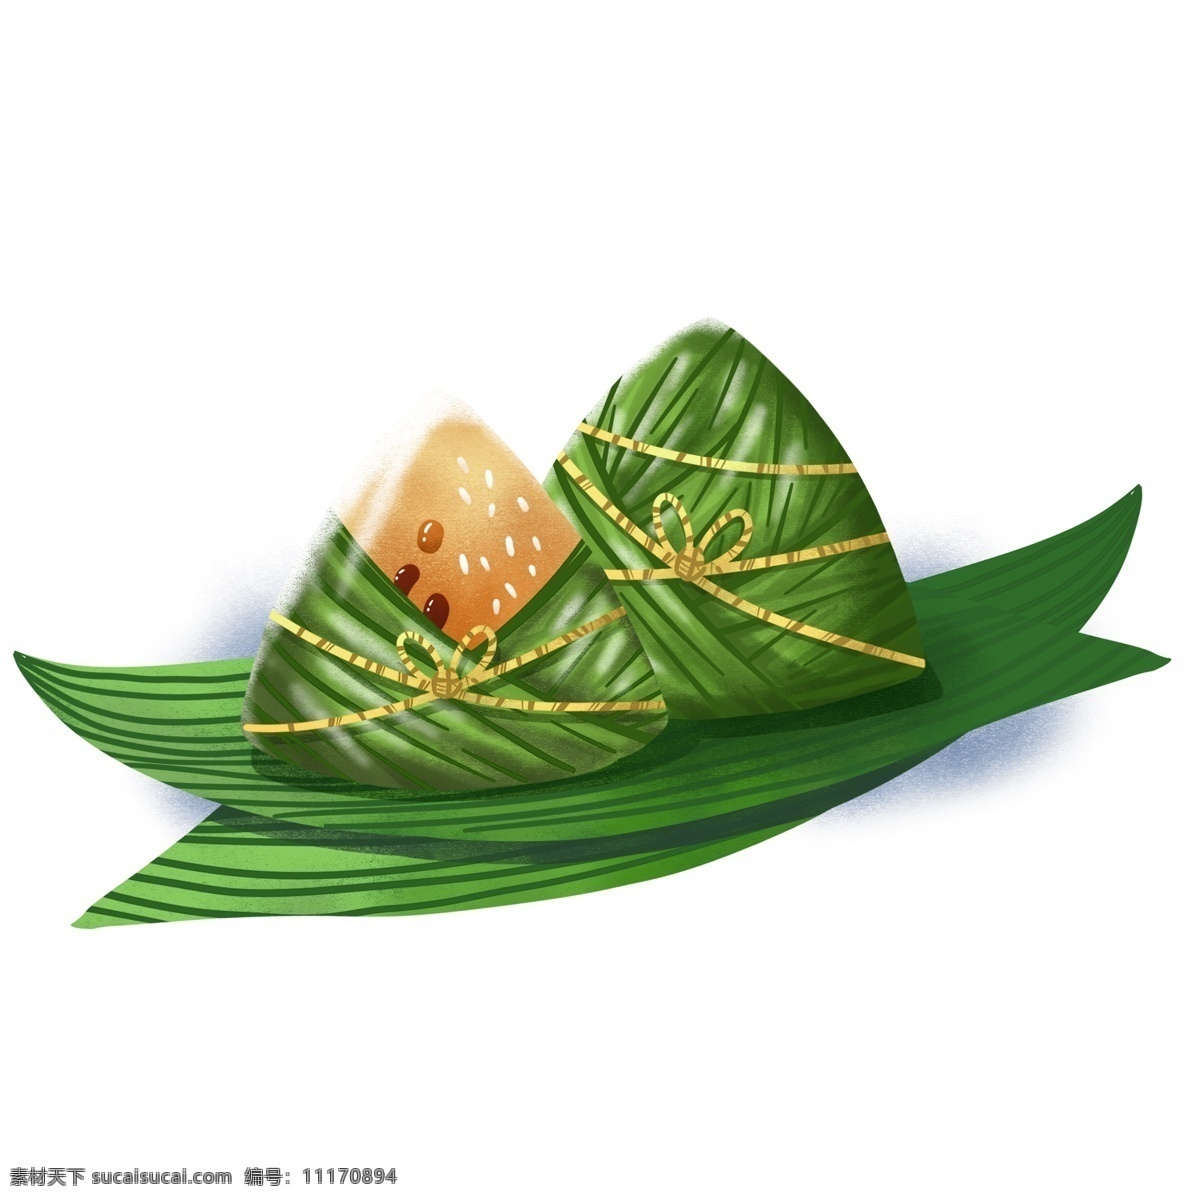 端午节 龙舟节 粽子 节 写实 料 食物 元素 原创 创意 绿色 免抠素材 端午 粽子节 鸡蛋 节料 粽球